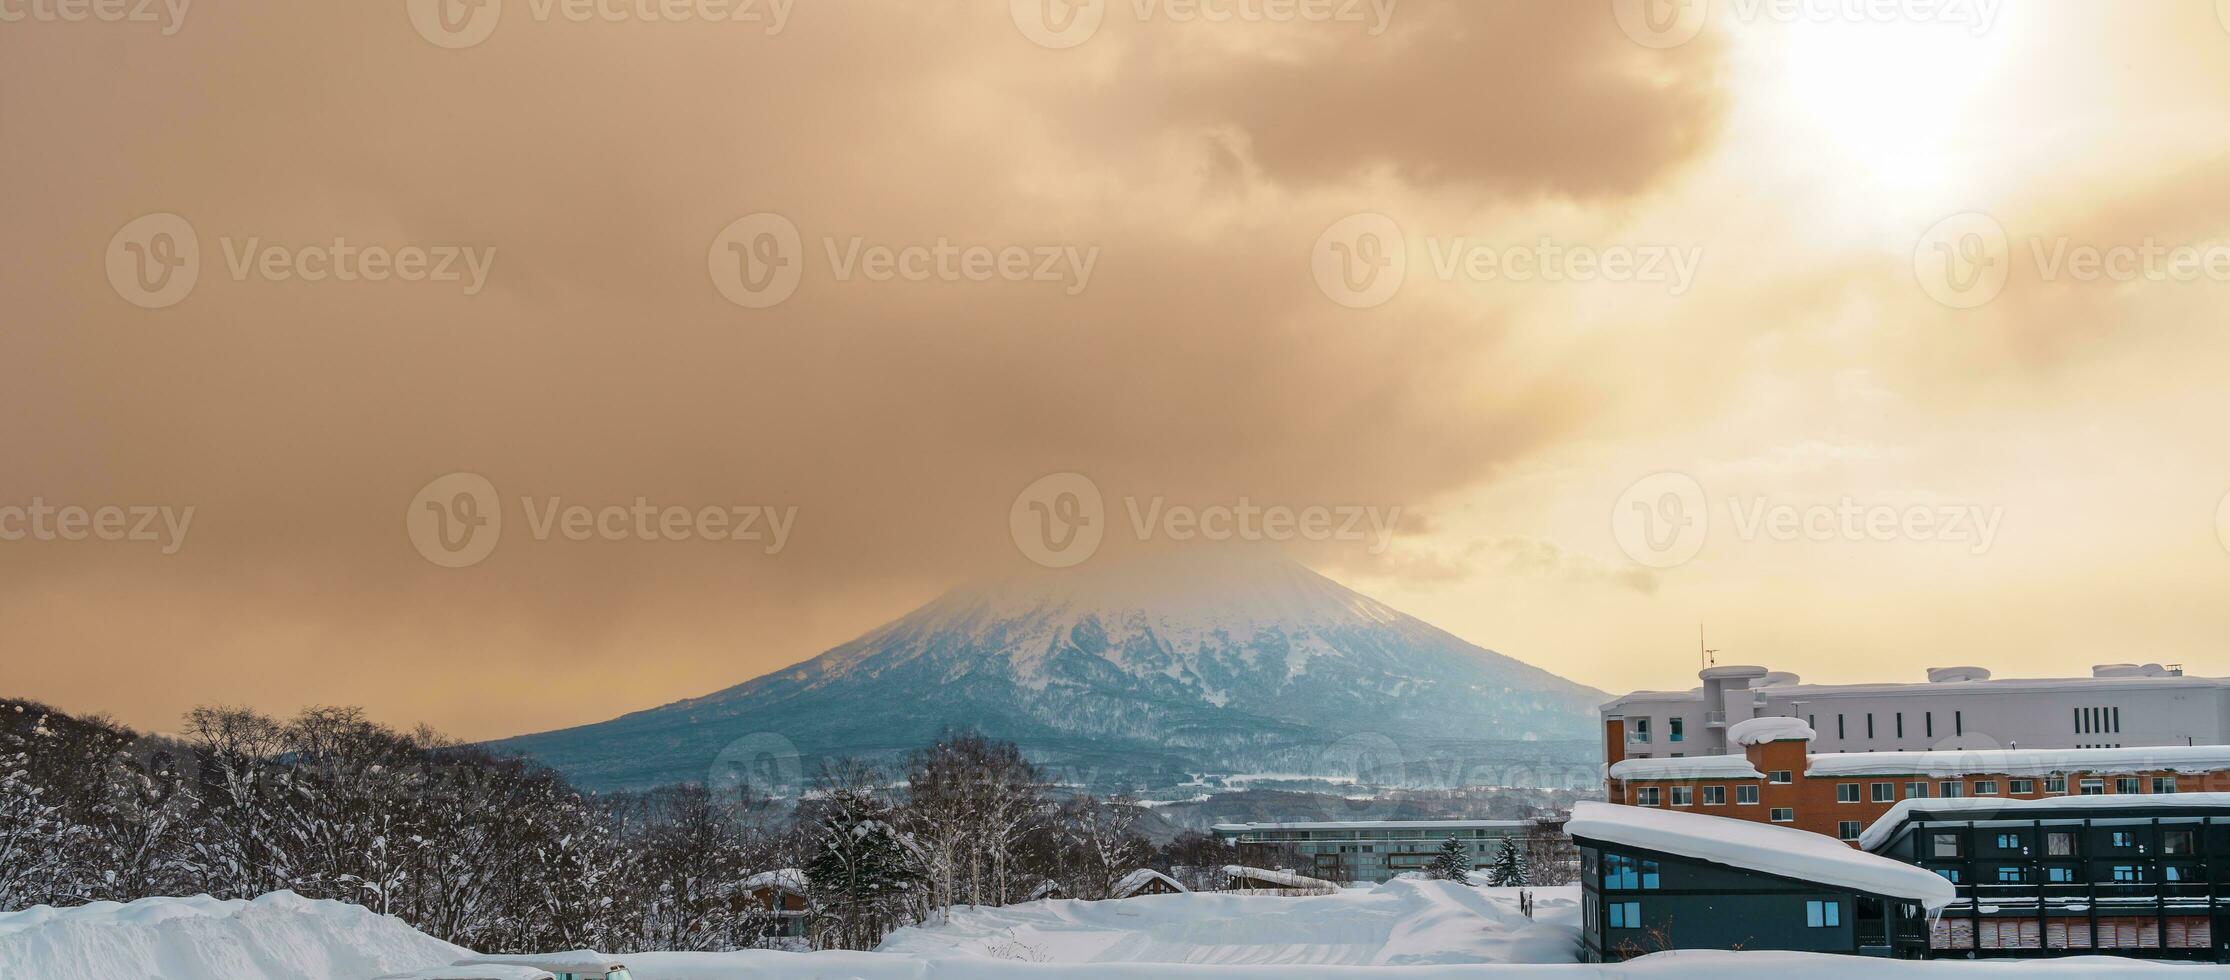 mooi Yotei berg met sneeuw in winter seizoen Bij niseko. mijlpaal en populair voor ski en snowboarden toeristen attracties in hokkaido, Japan. reizen en vakantie concept foto